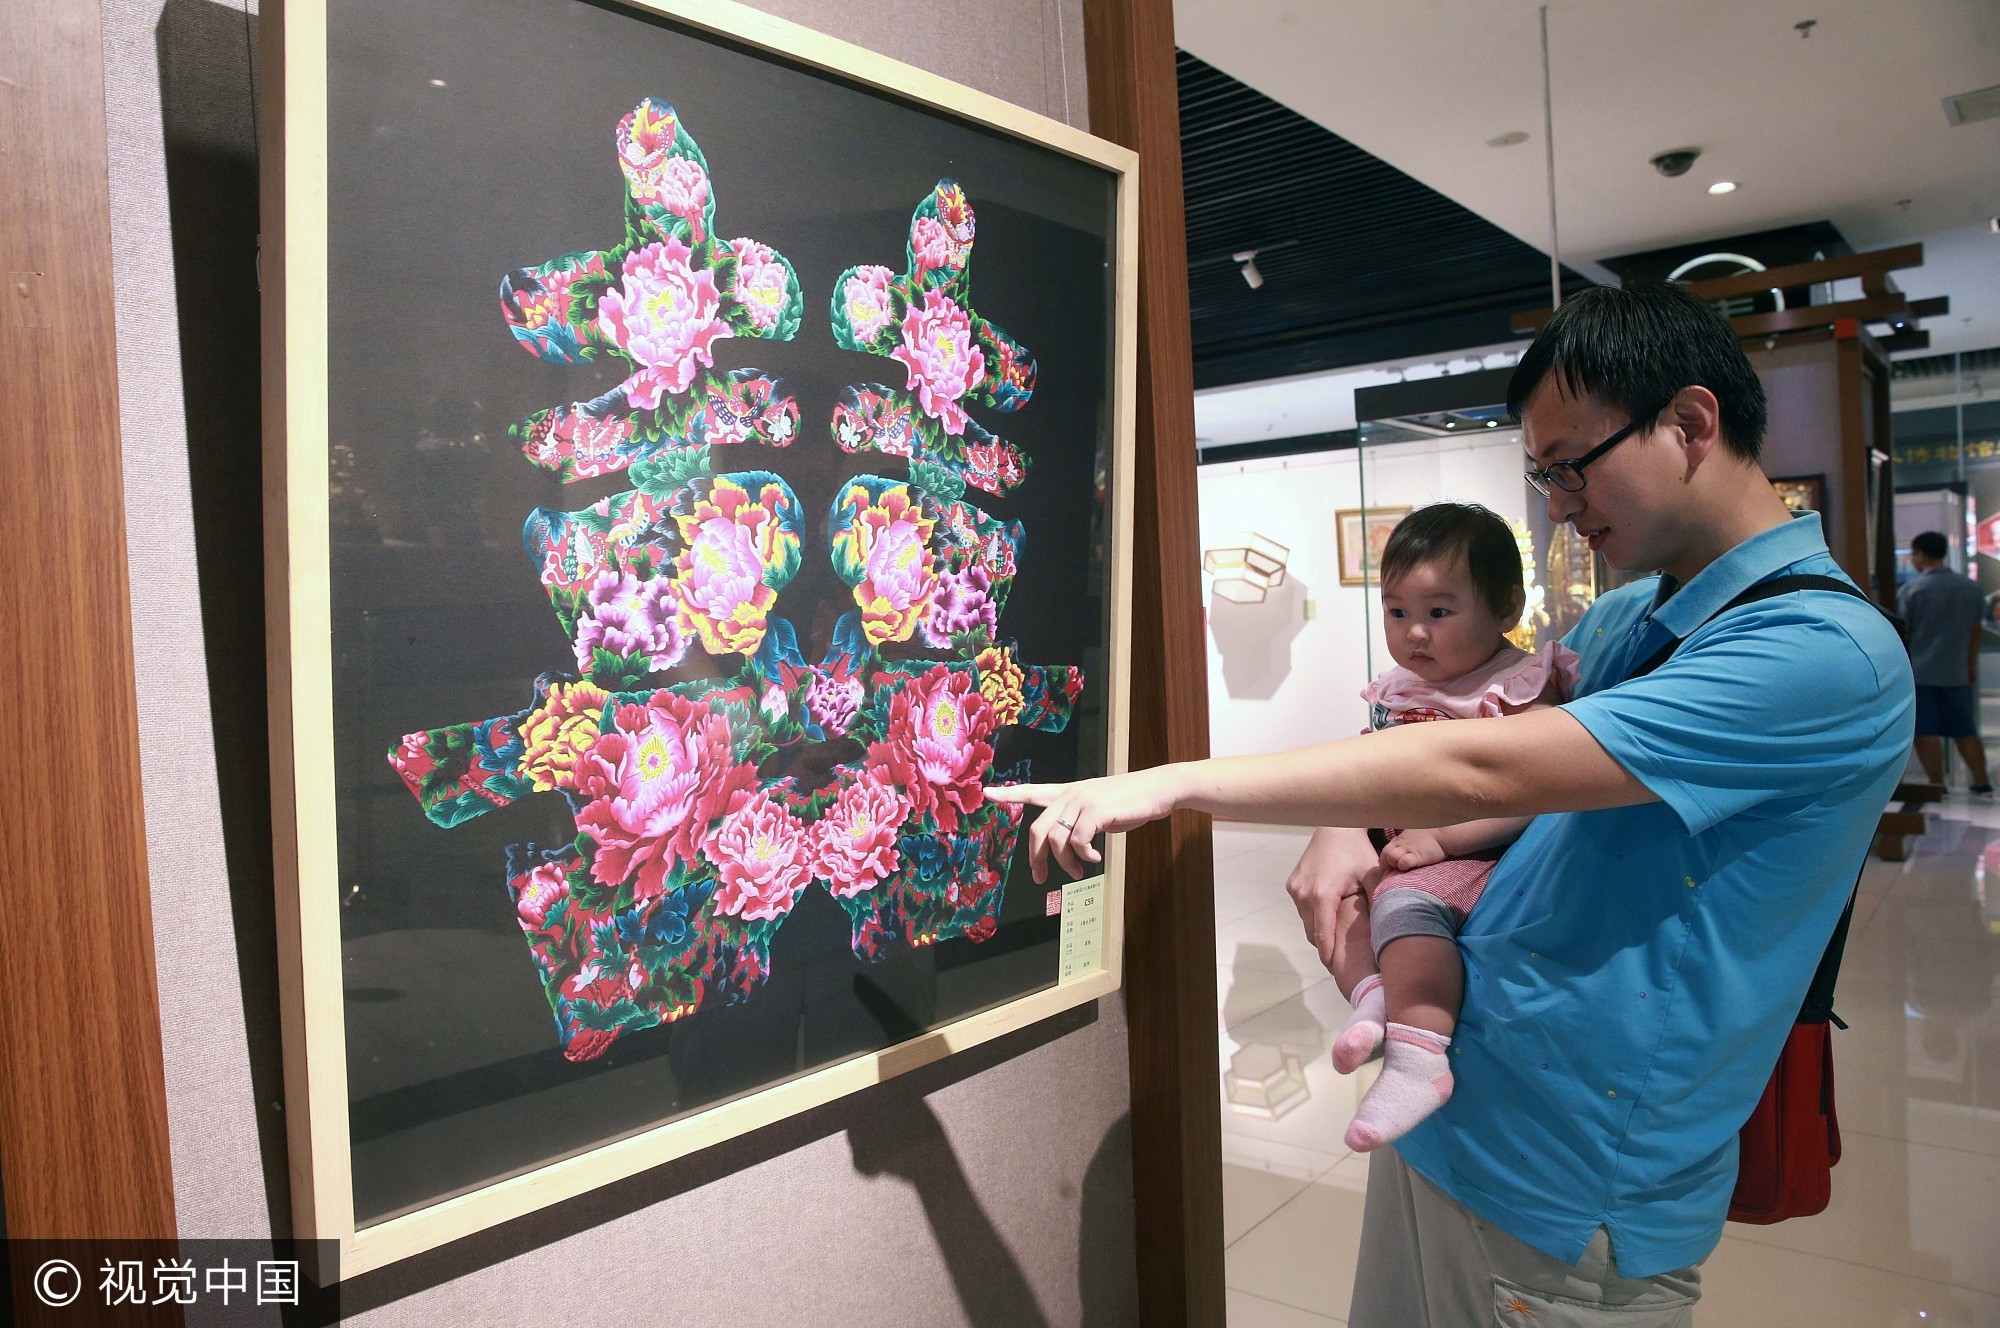 2017年9月3日，一位家长抱着孩子在北京工艺美术创新设计大赛作品展上观赏美术作品《喜从天降》。